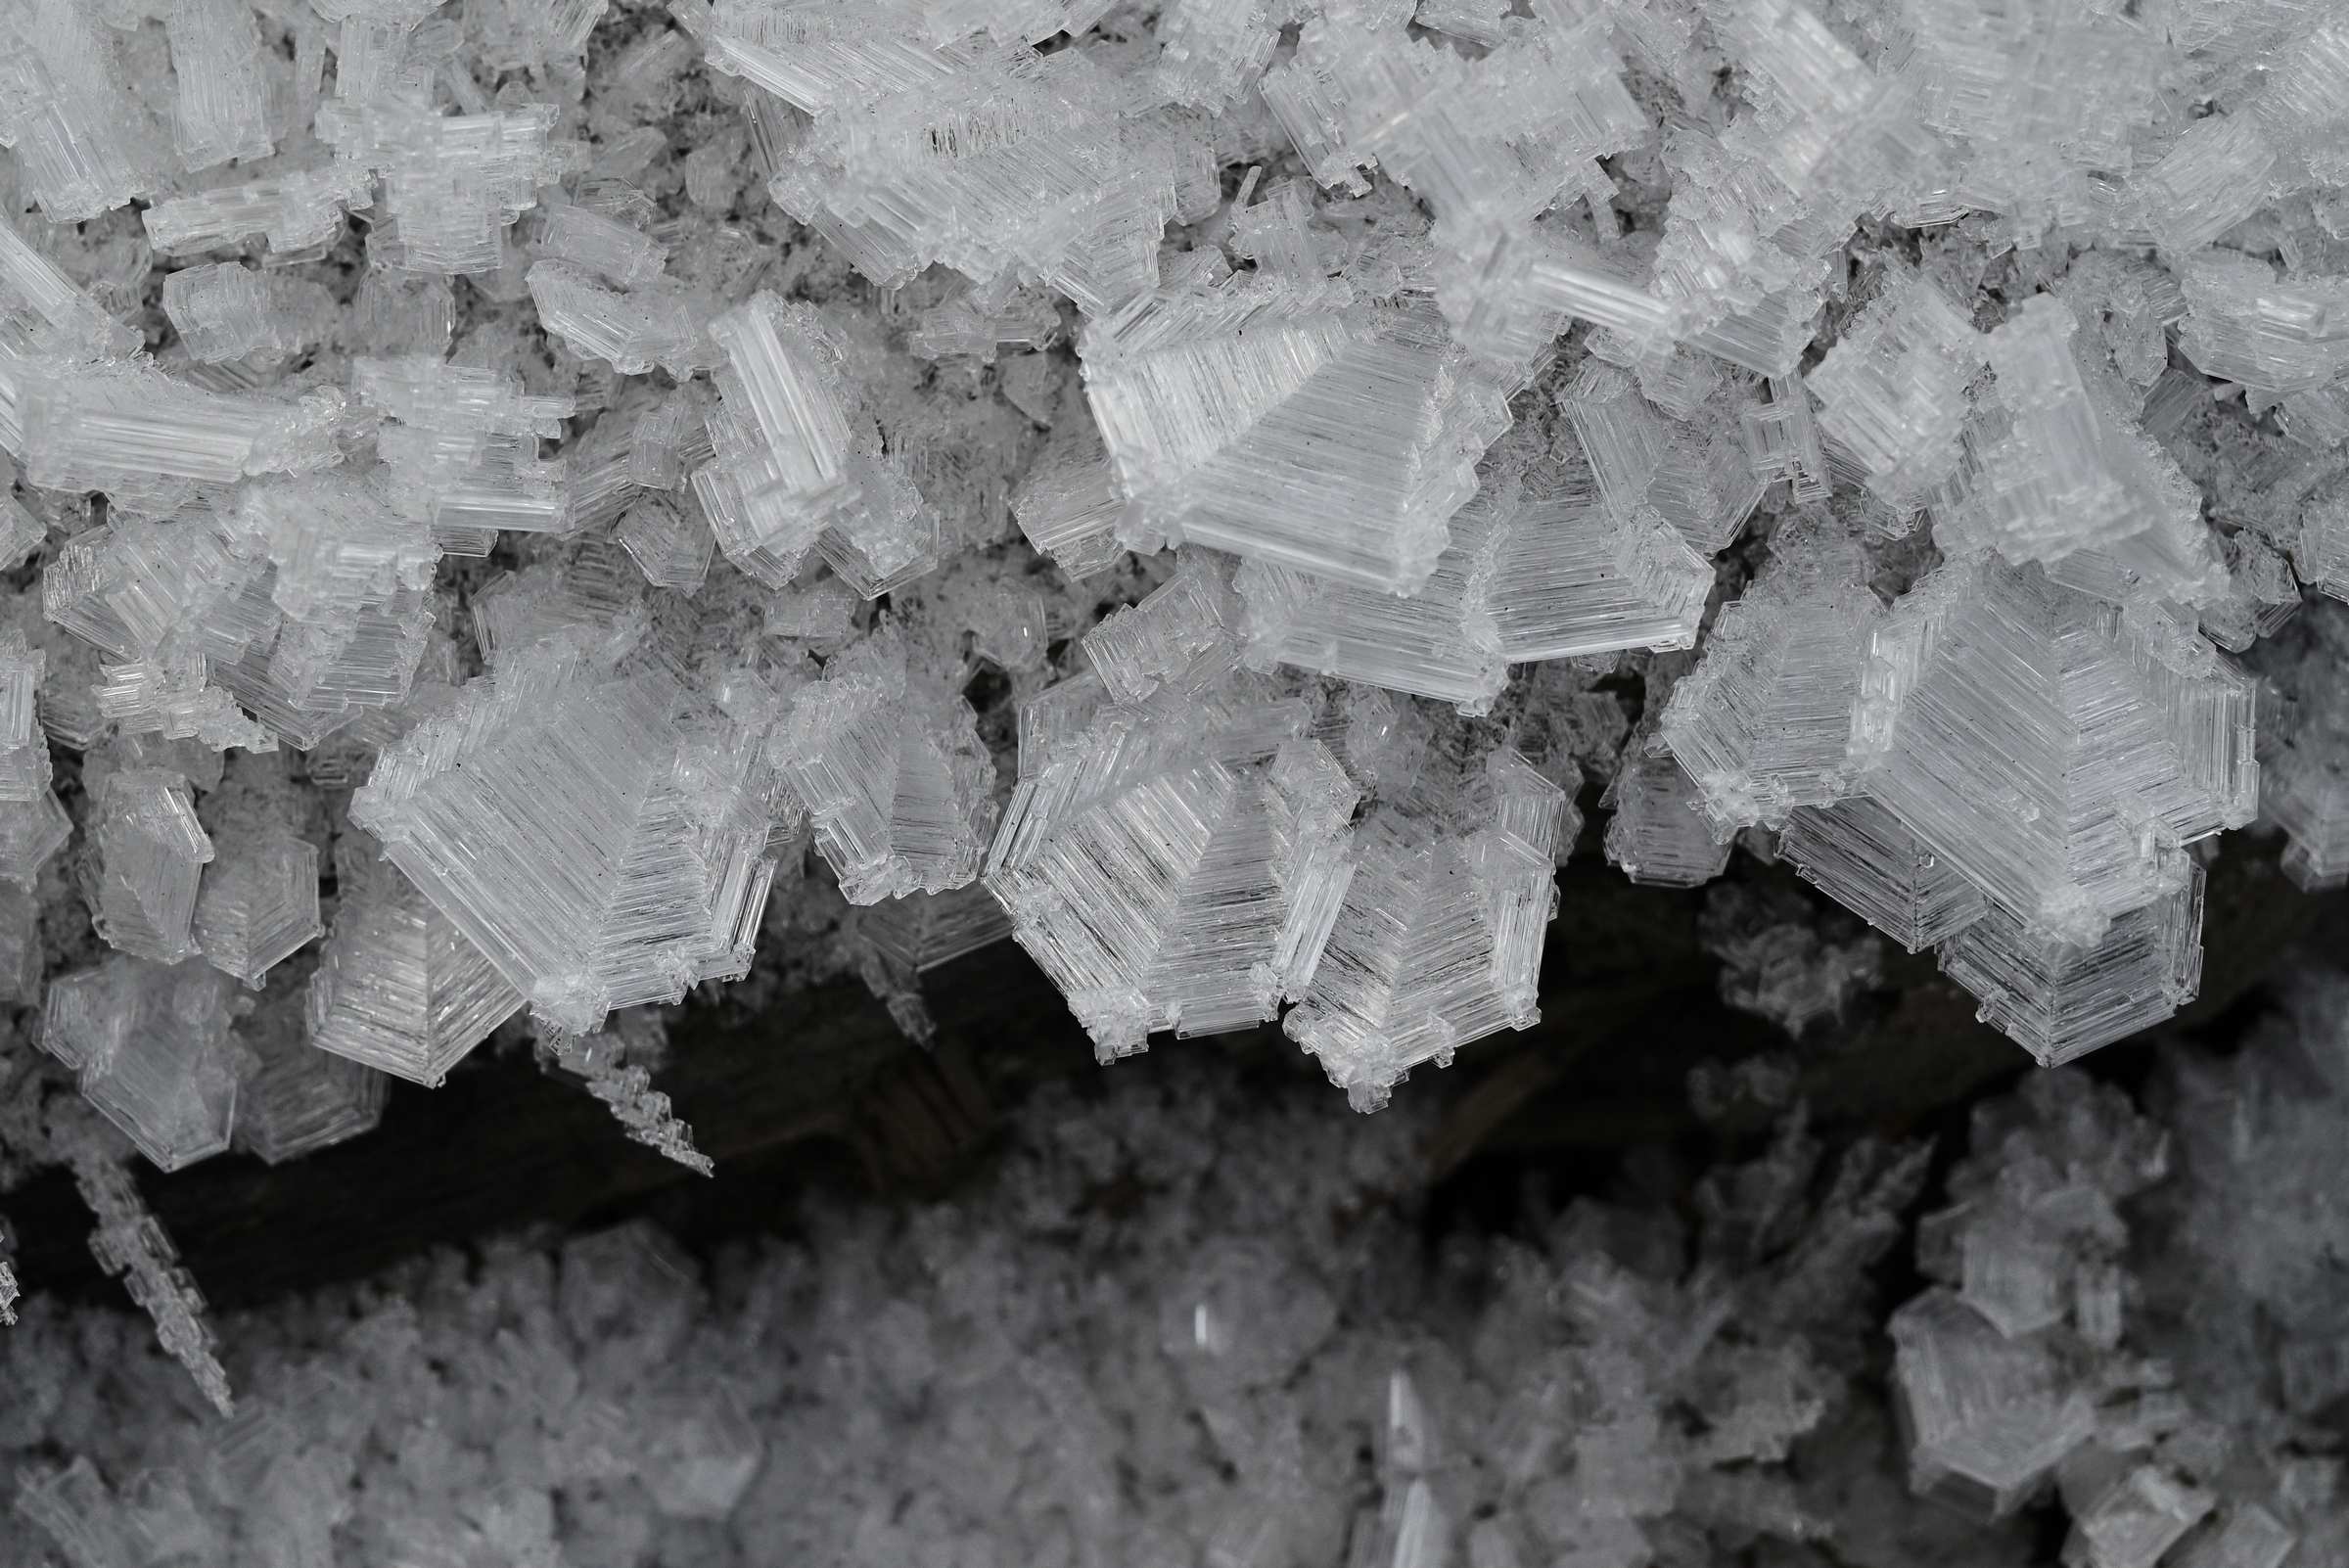 Дагестан. Необычный снег в виде кристаллов в Карадахском ущелье.